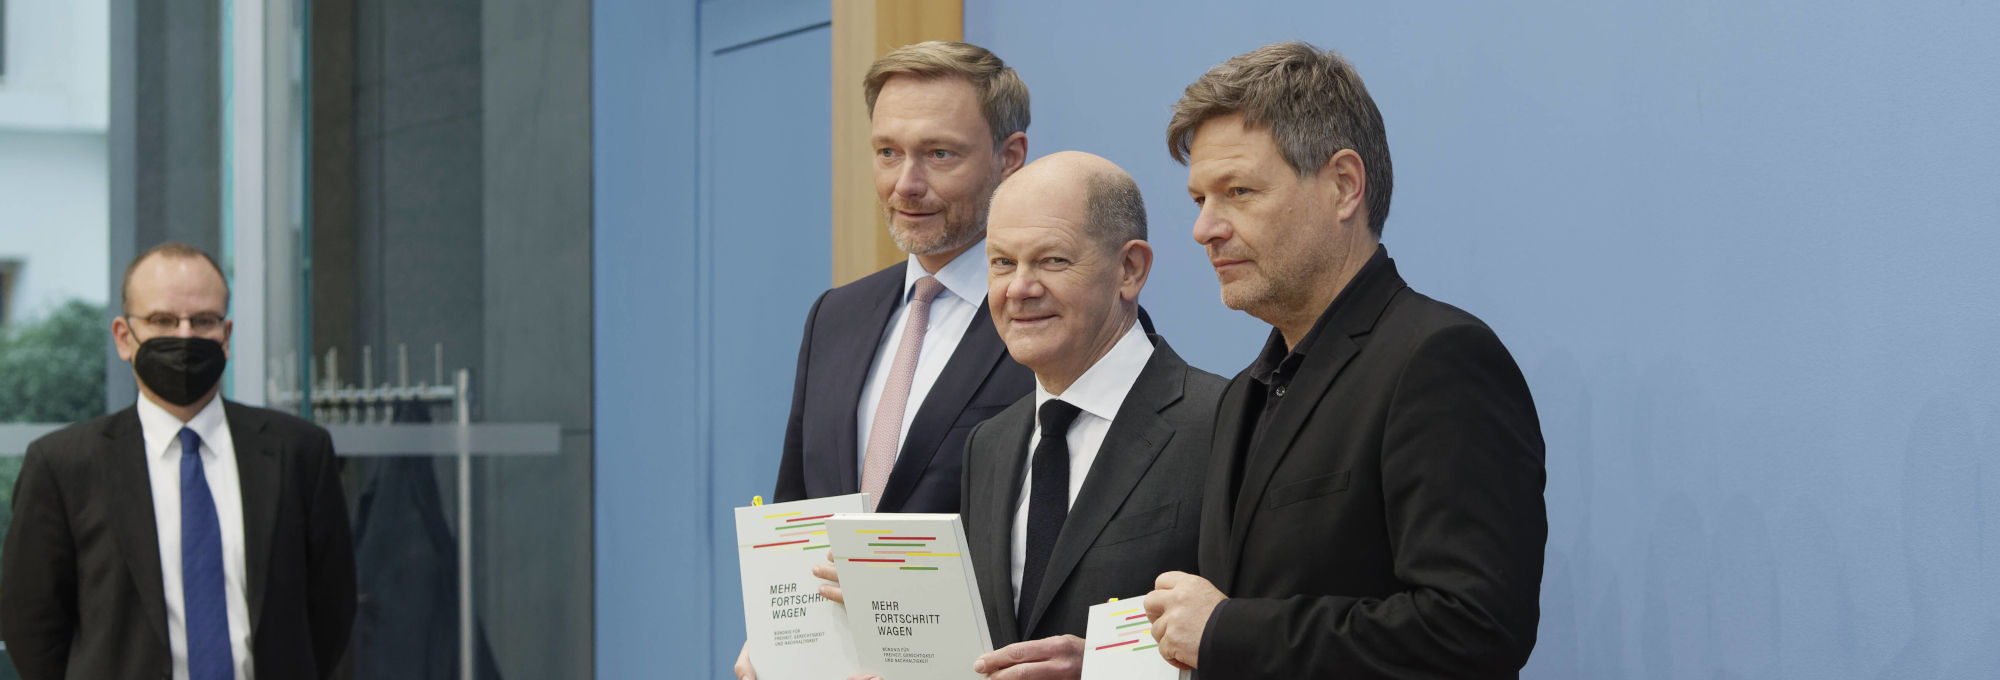 Christian Lindner, Olaf Scholz und Robert Habeck von links nach rechts halten je vor einen Koalitionsvertrag in gedruckter Form vor sich